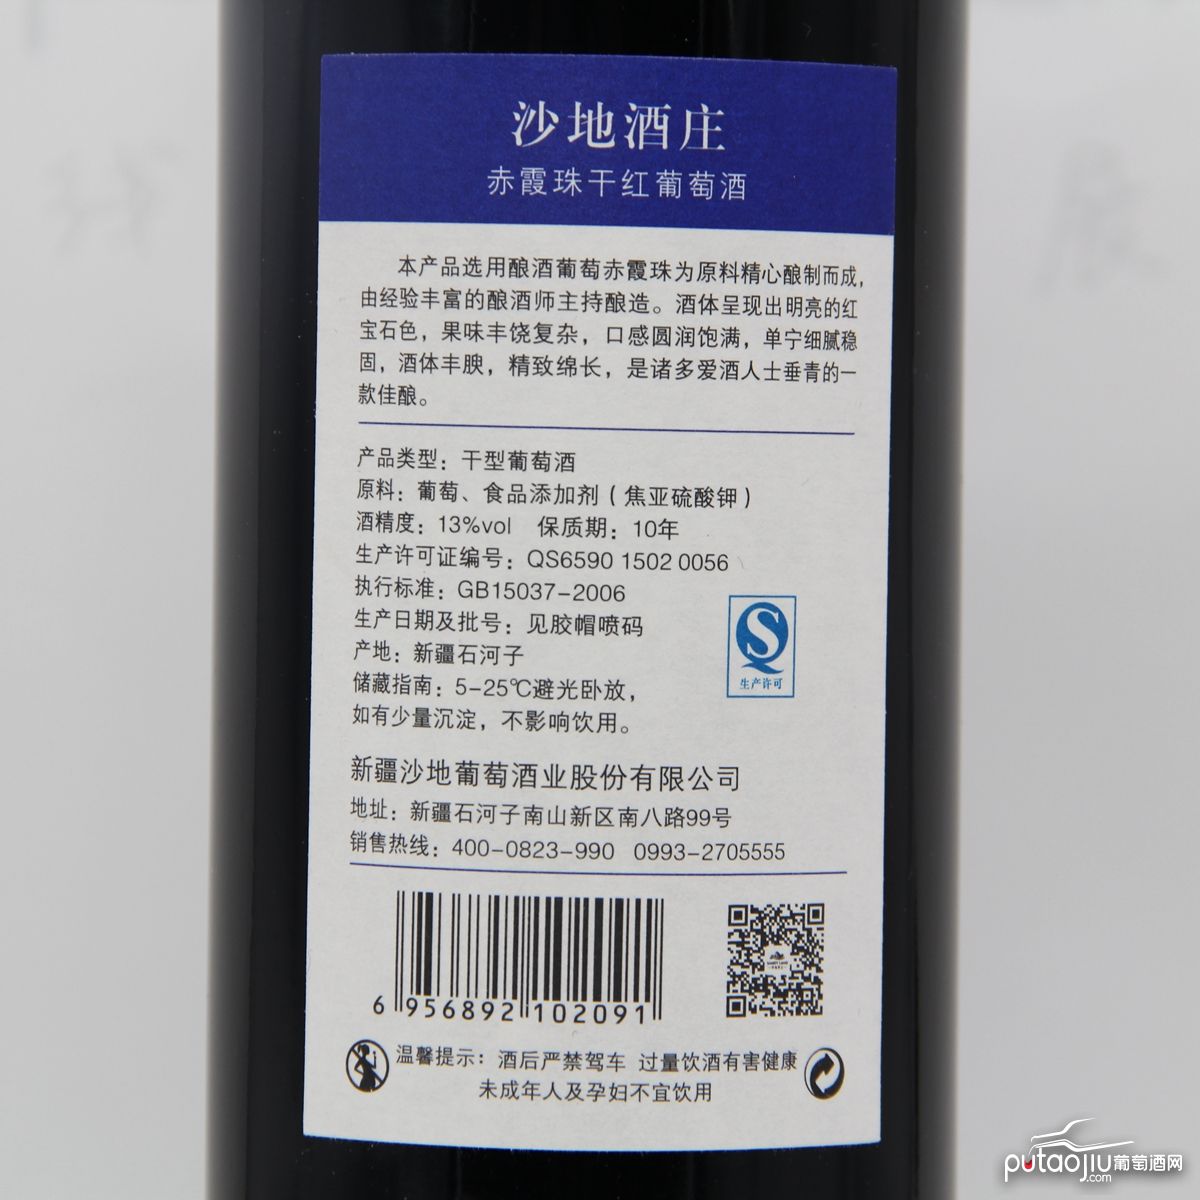 中国新疆产区沙地酒庄 赤霞珠干红葡萄酒